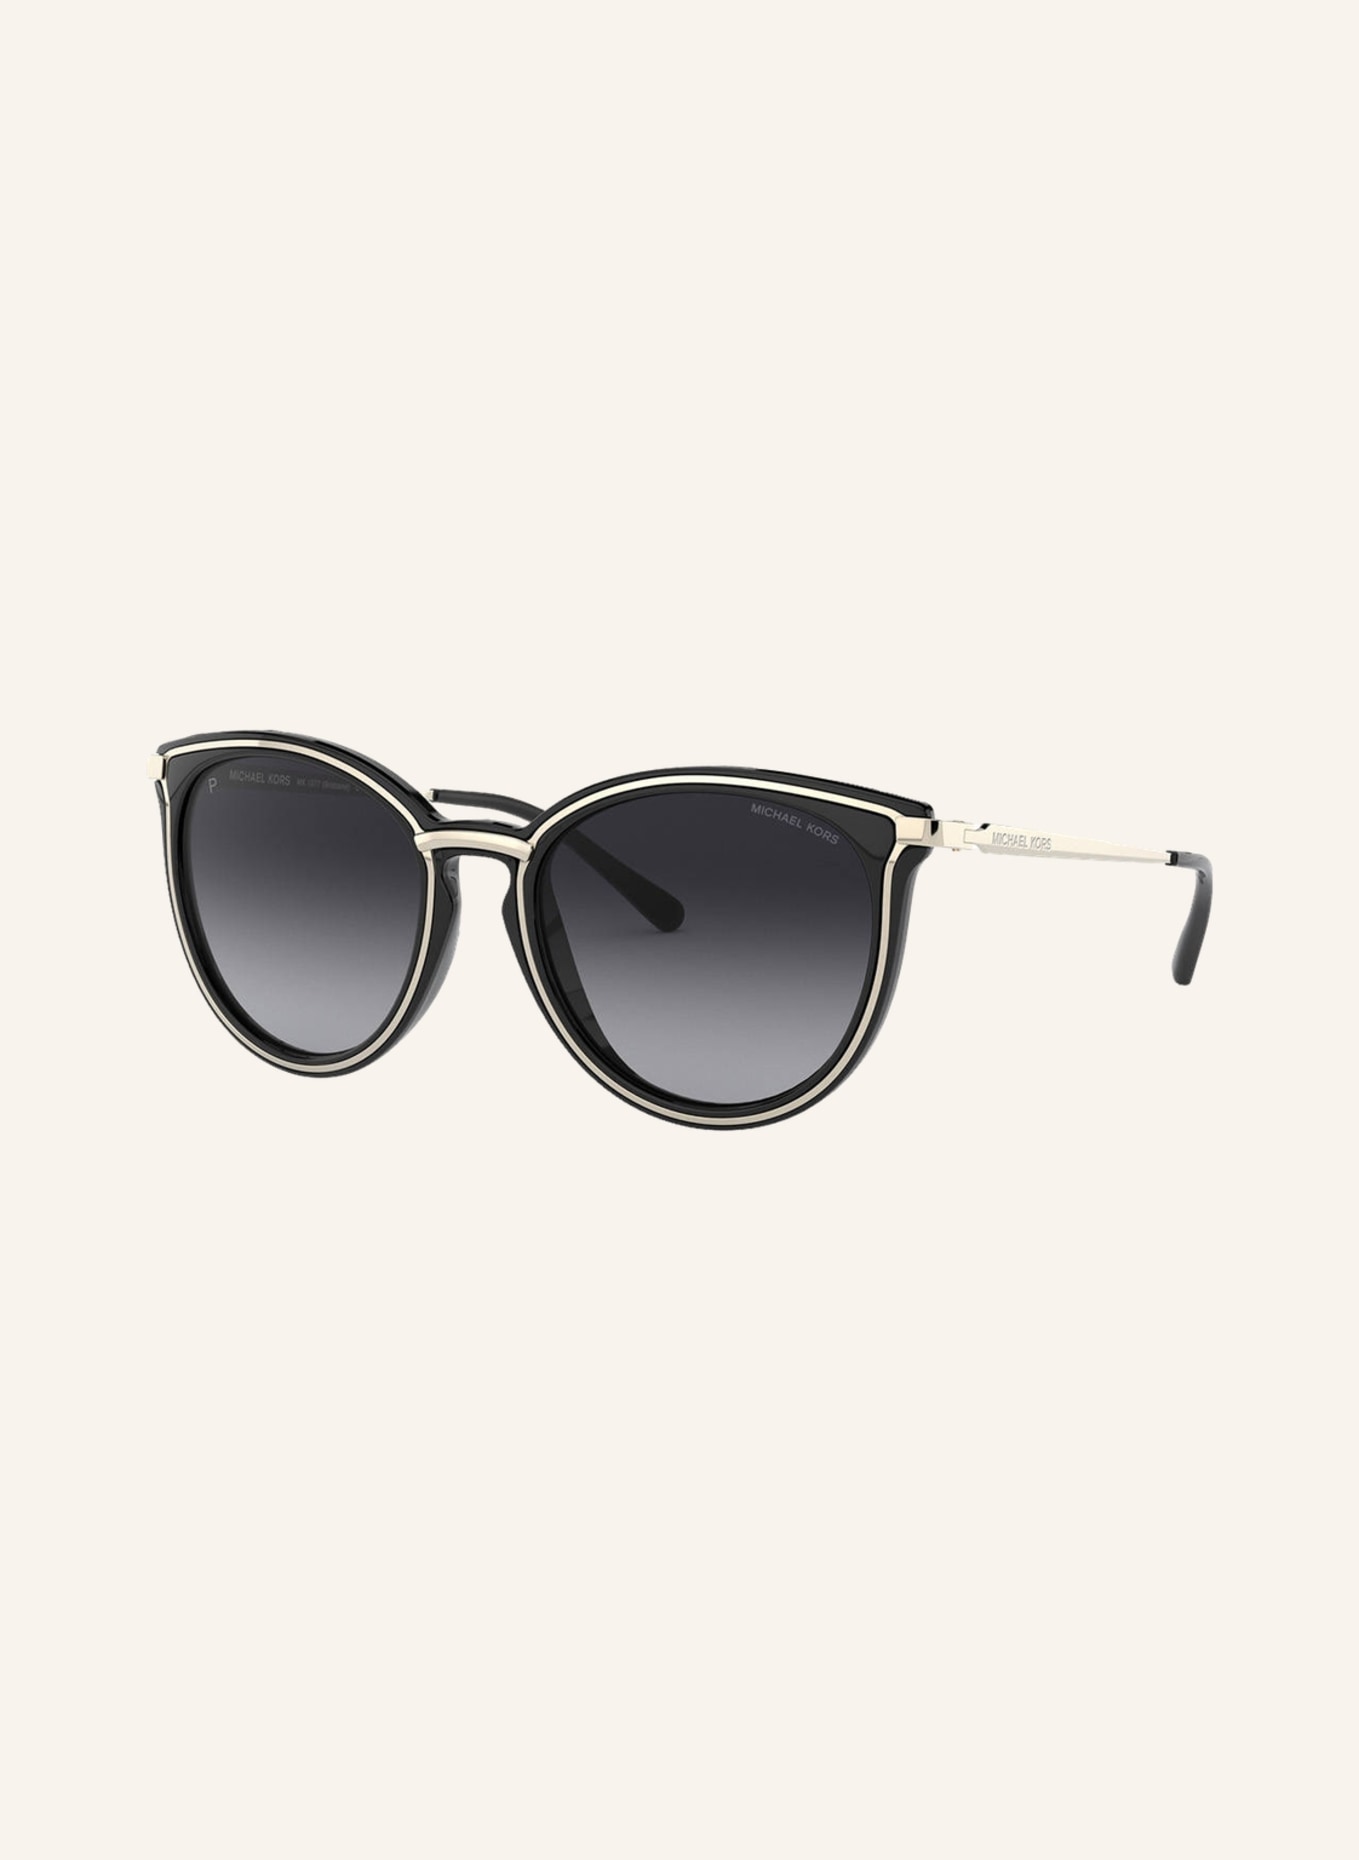 MICHAEL KORS Sunglasses MK1077, Color: 1014T3 - GOLD/ BLACK GRADIENT (Image 1)